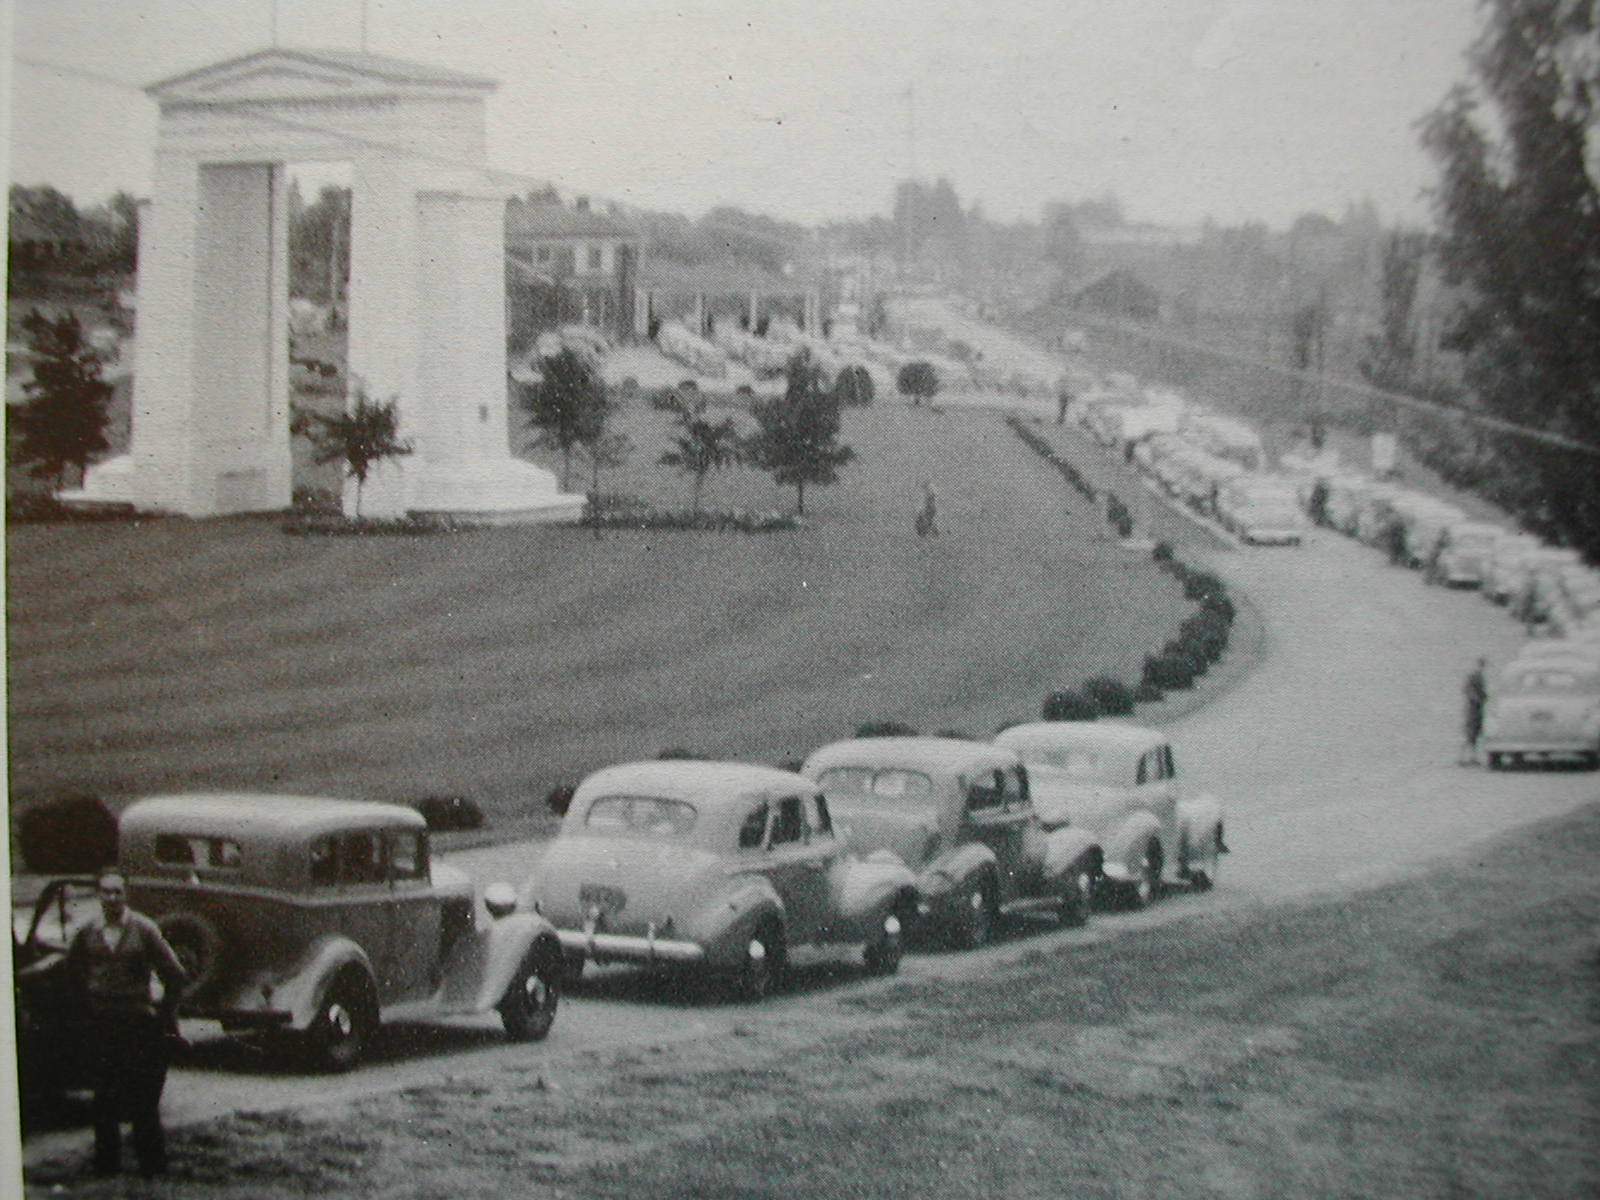 Fotografia em preto e branco mostra diversos veículos em fila ao lado de um arco neoclássico